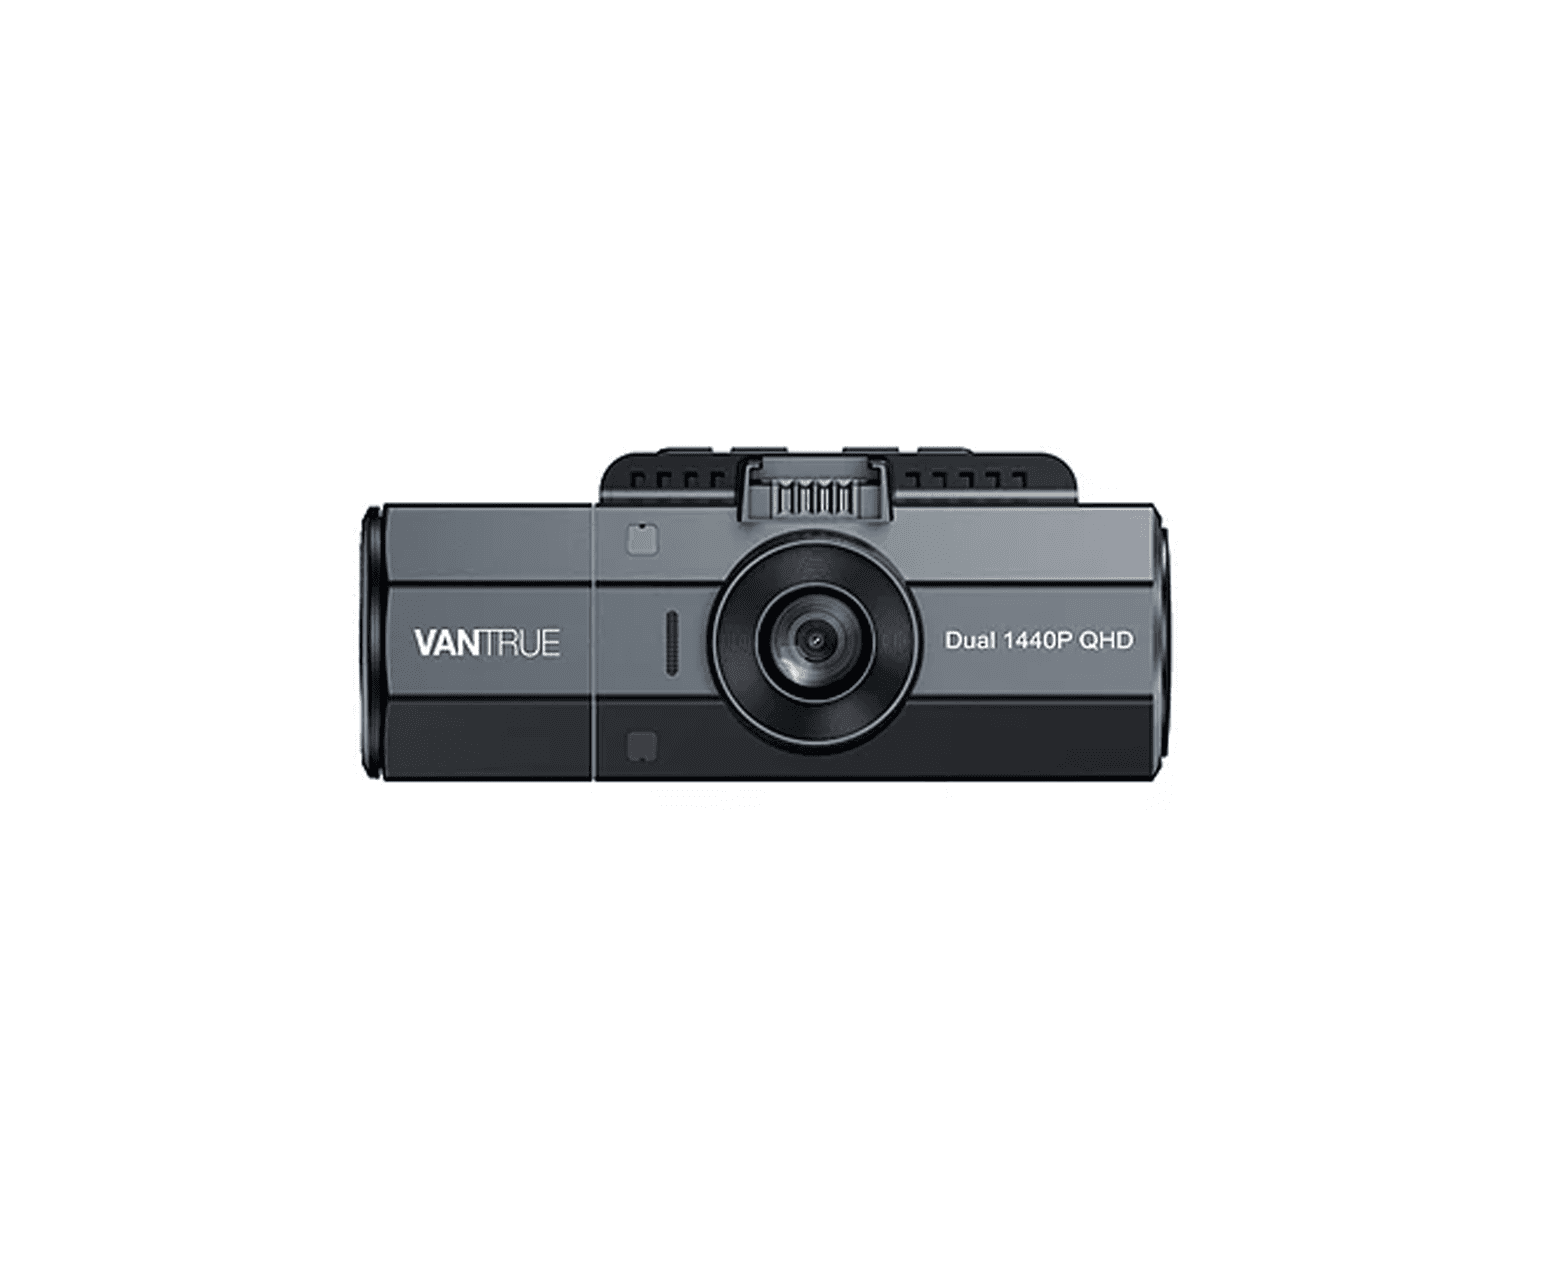 Kamera samochodowa Vantrue N2S Dual 1440p z GPS